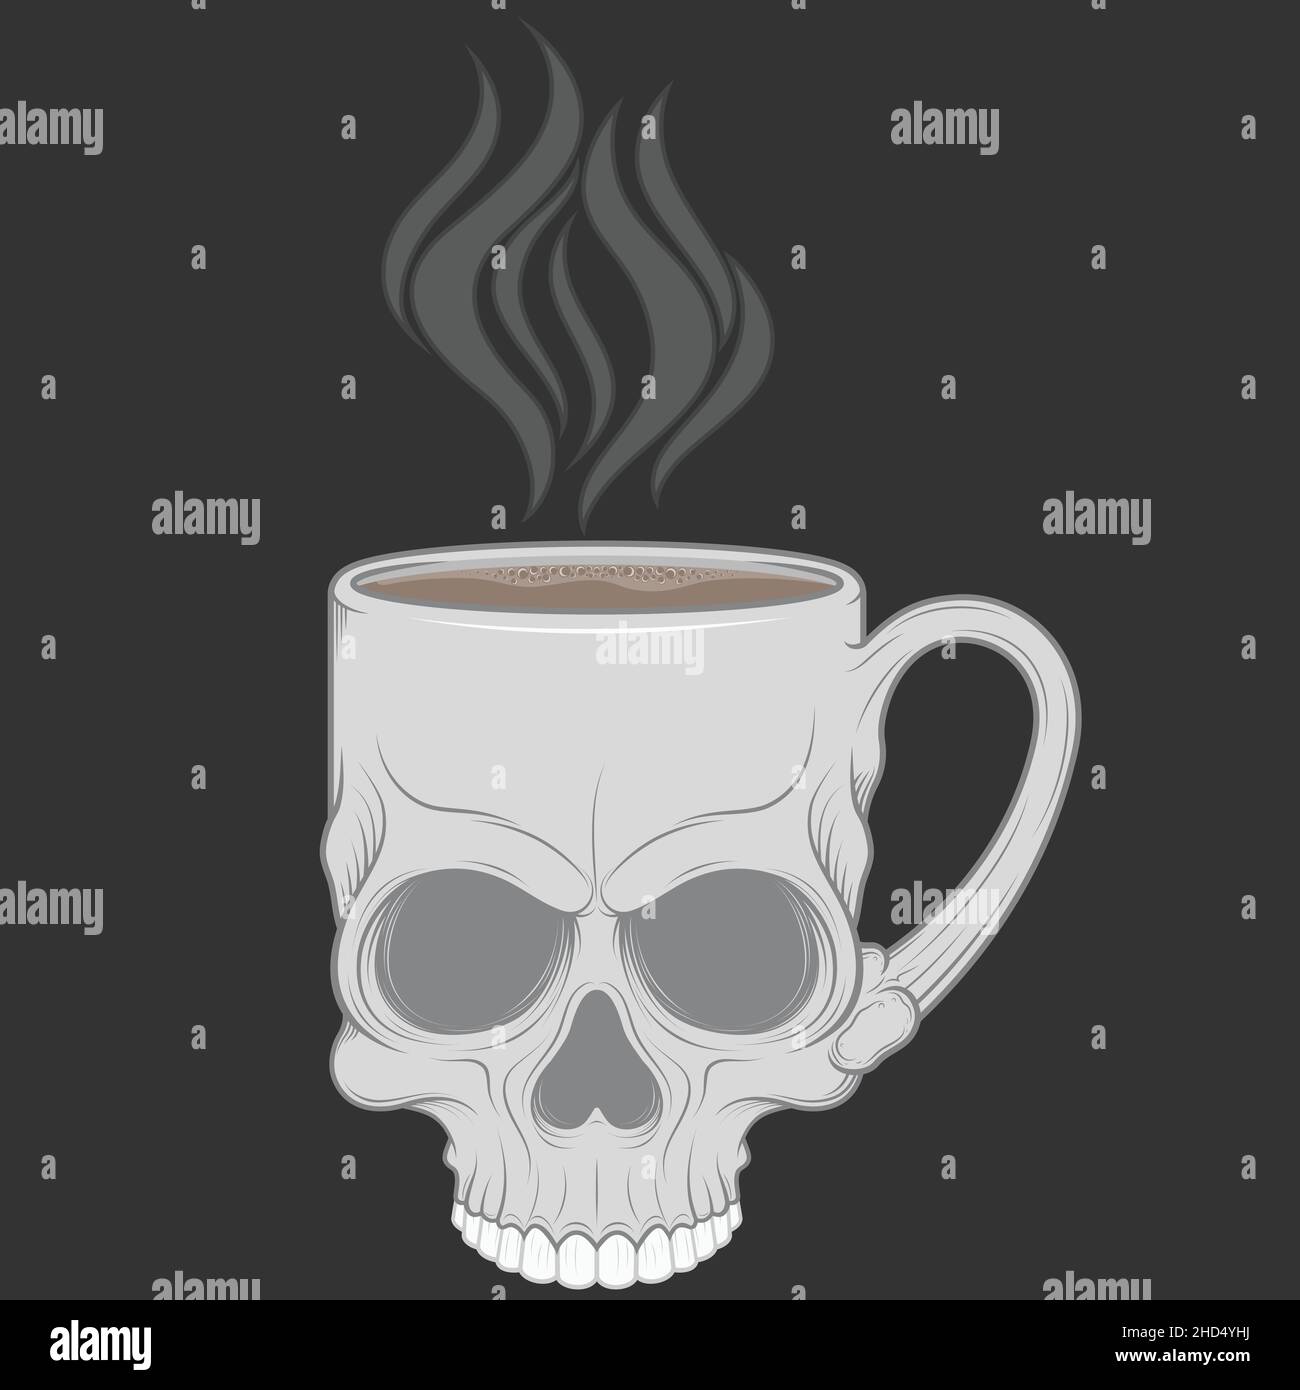 Abbildung von Schädelform Tasse mit heißem Kaffee, heißes Getränk in einem menschlichen Schädel Stock Vektor